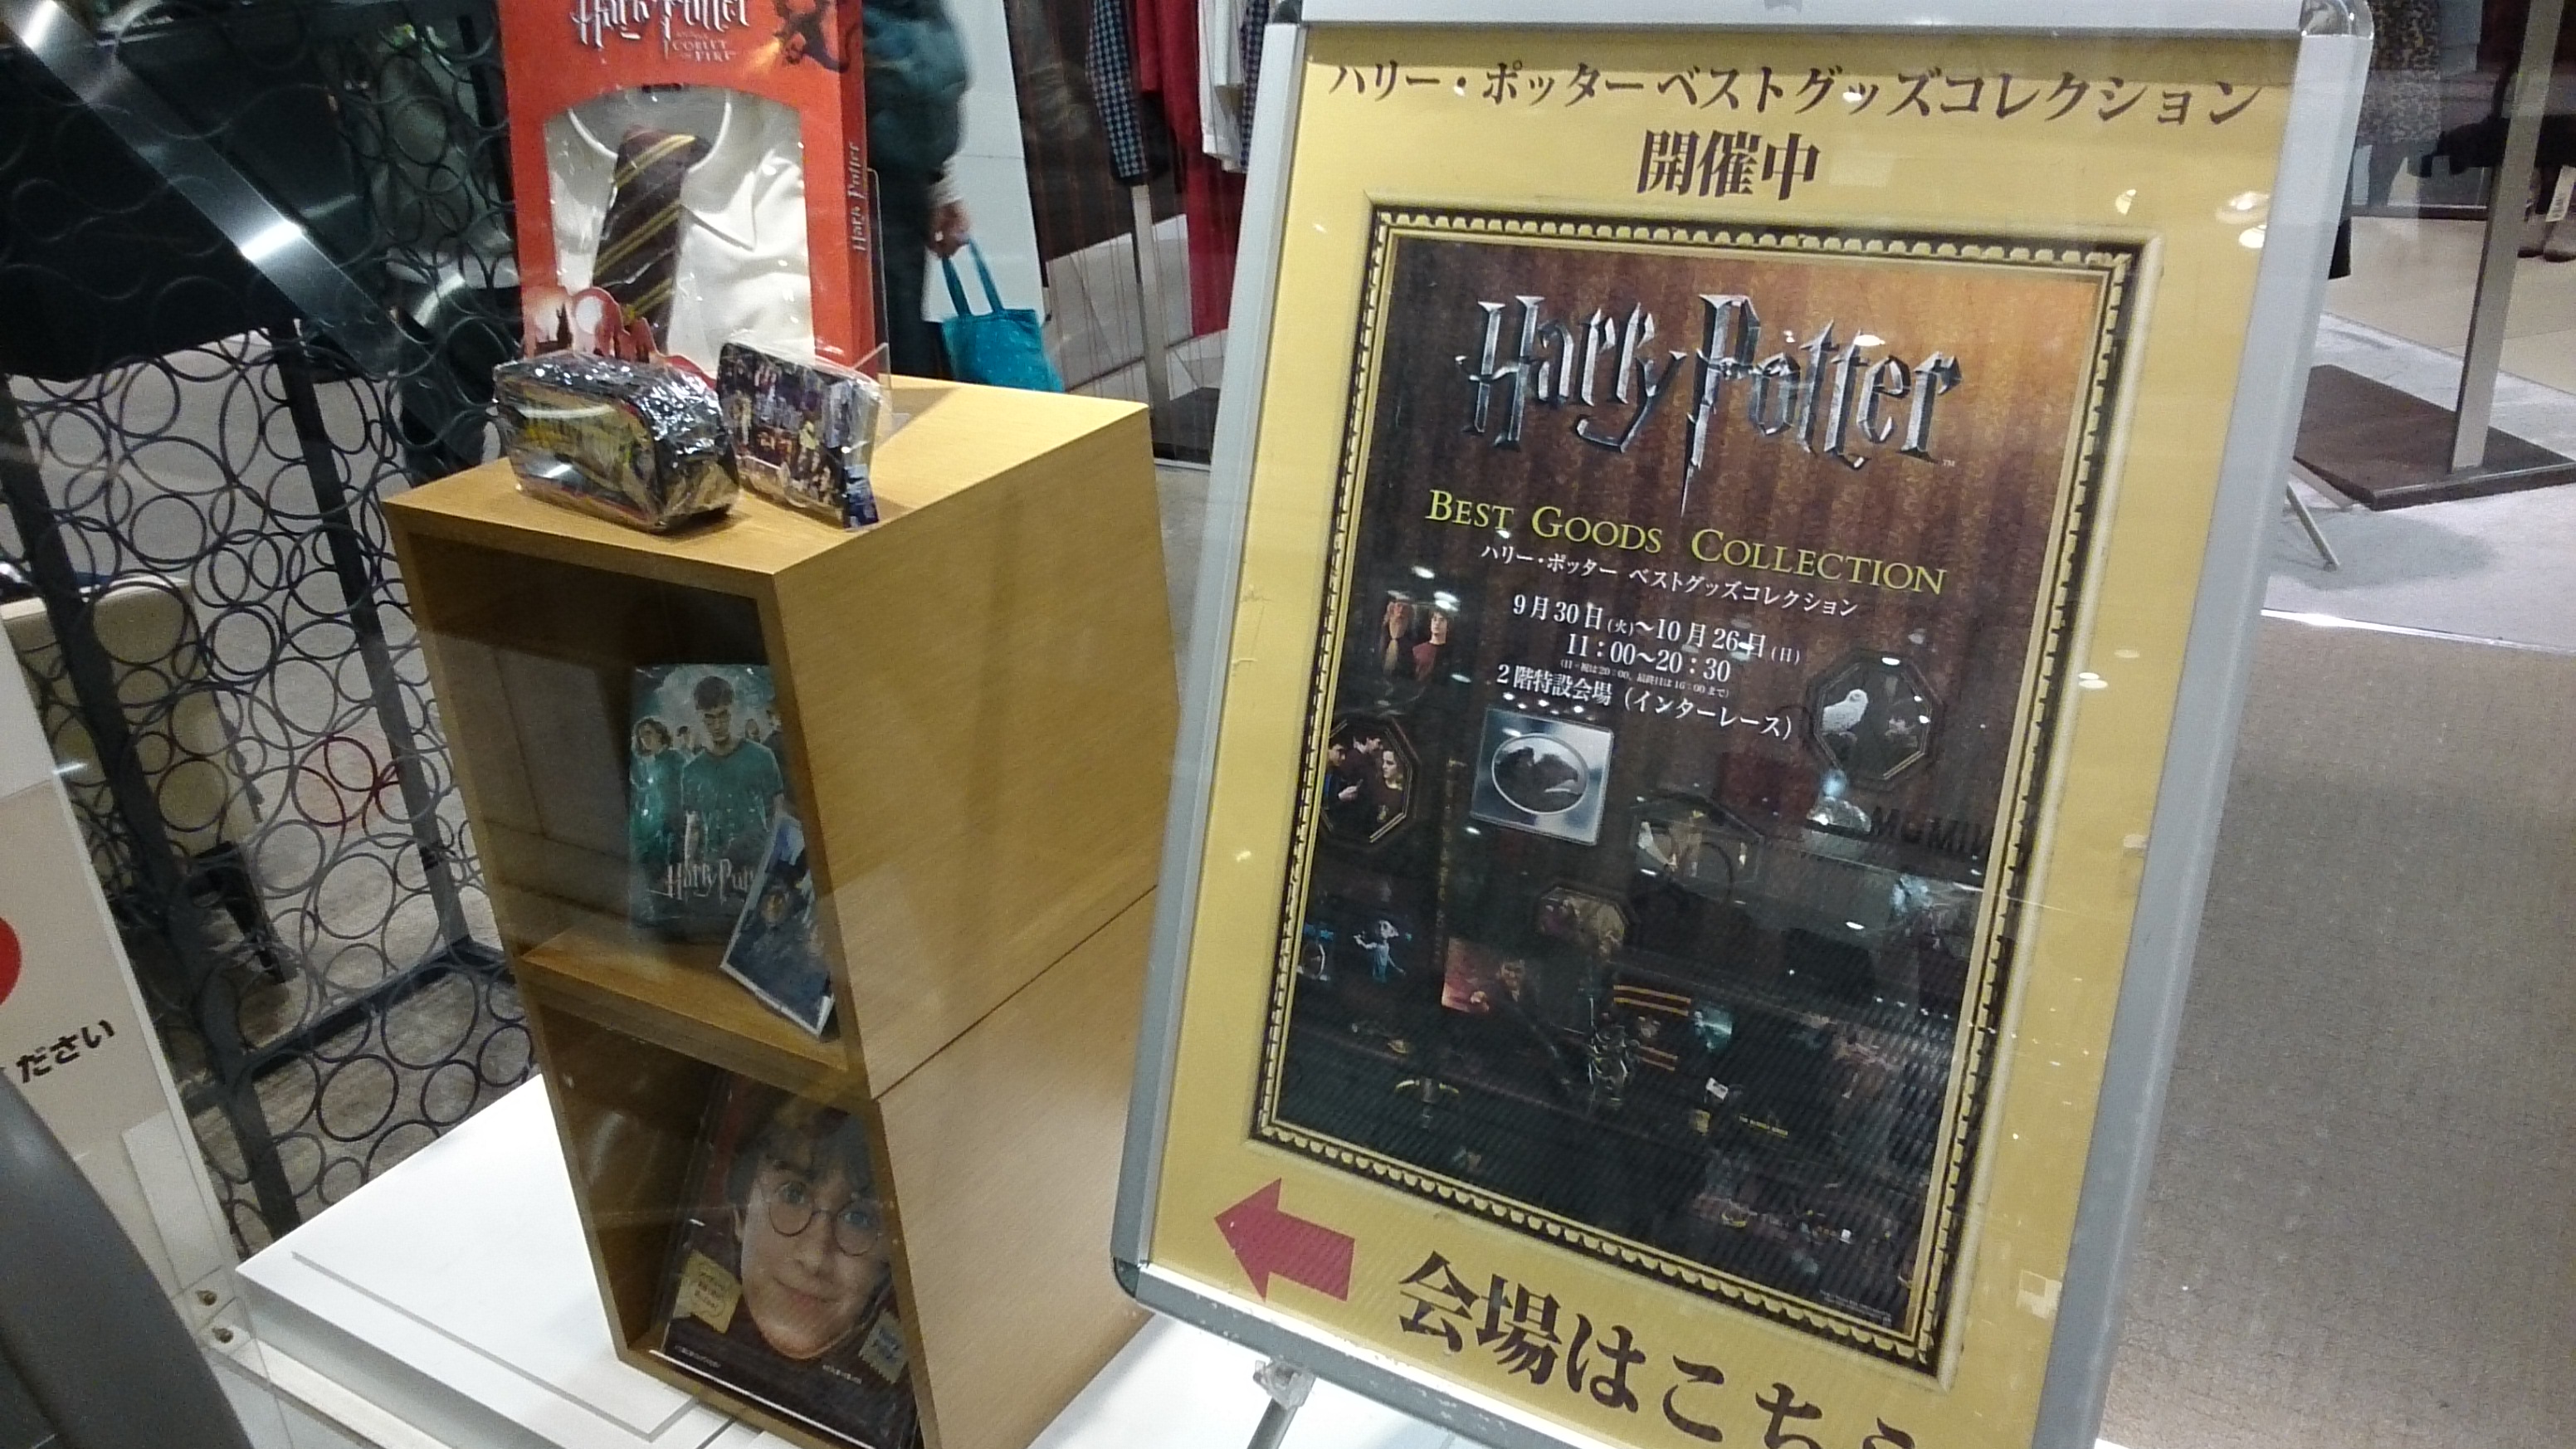 Harry Potter Best Goods Collection Namba Marui (Osaka/Namba)